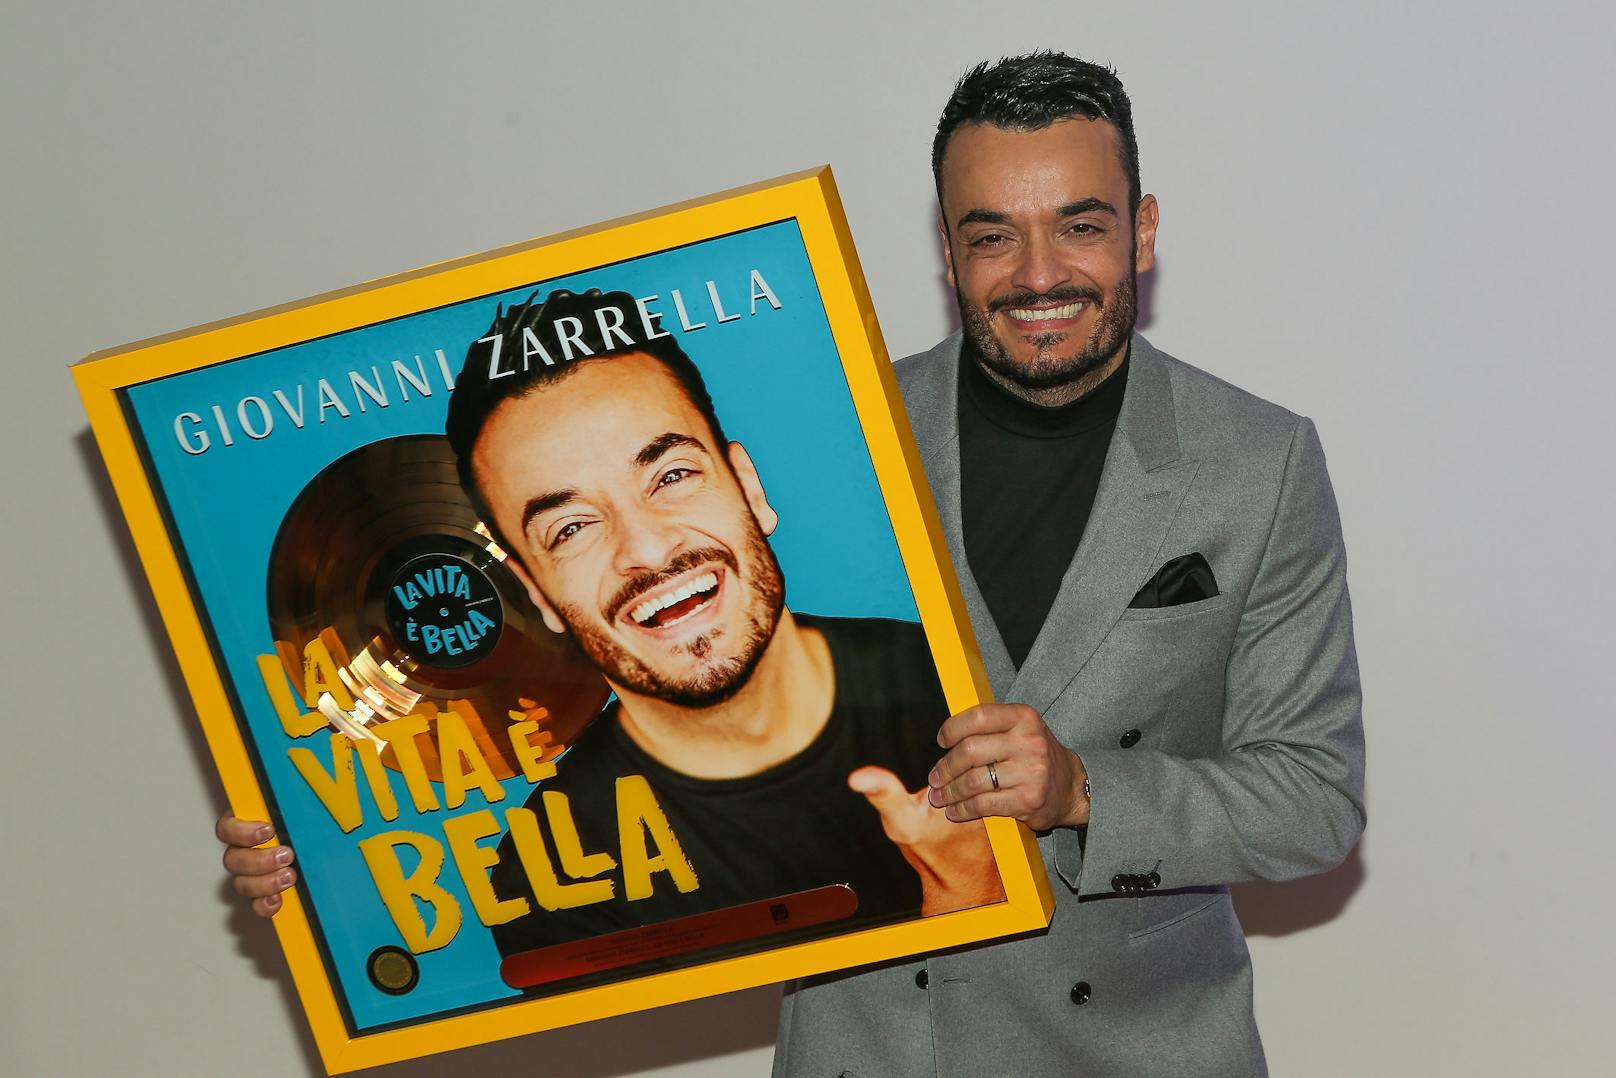 Für sein Album "La vita e bella" wurde Giovanni Zarrella&nbsp;mit Gold aus Österreich und Platin aus Deutschland ausgezeichnet.